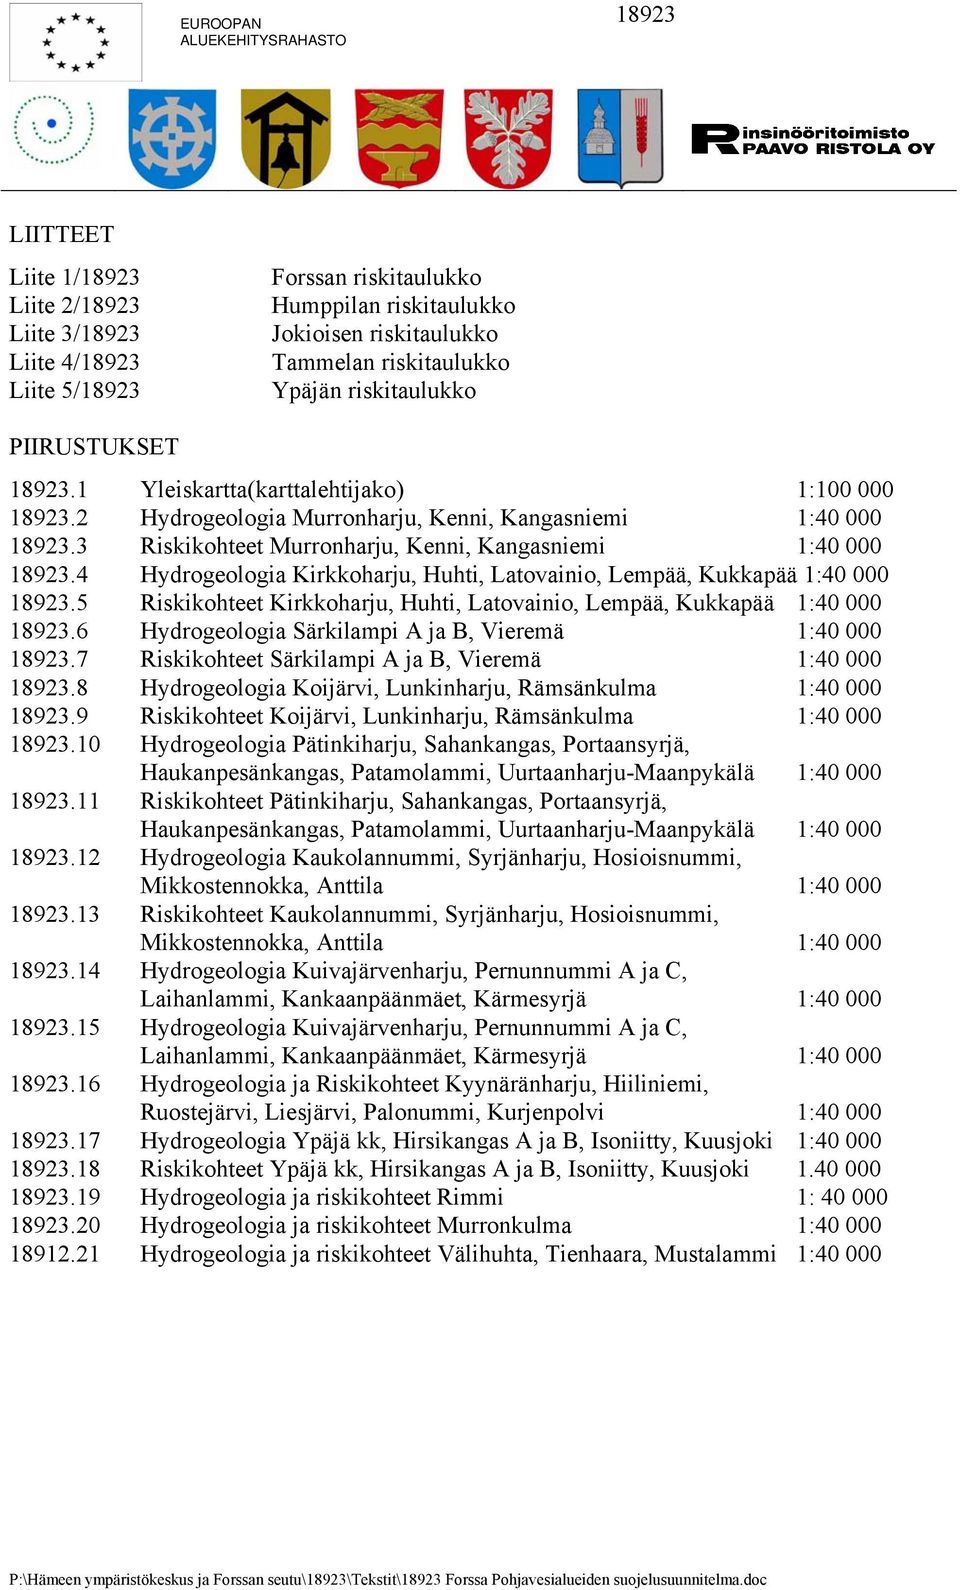 4 Hydrogeologia Kirkkoharju, Huhti, Latovainio, Lempää, Kukkapää 1:40 000 18923.5 Riskikohteet Kirkkoharju, Huhti, Latovainio, Lempää, Kukkapää 1:40 000 18923.